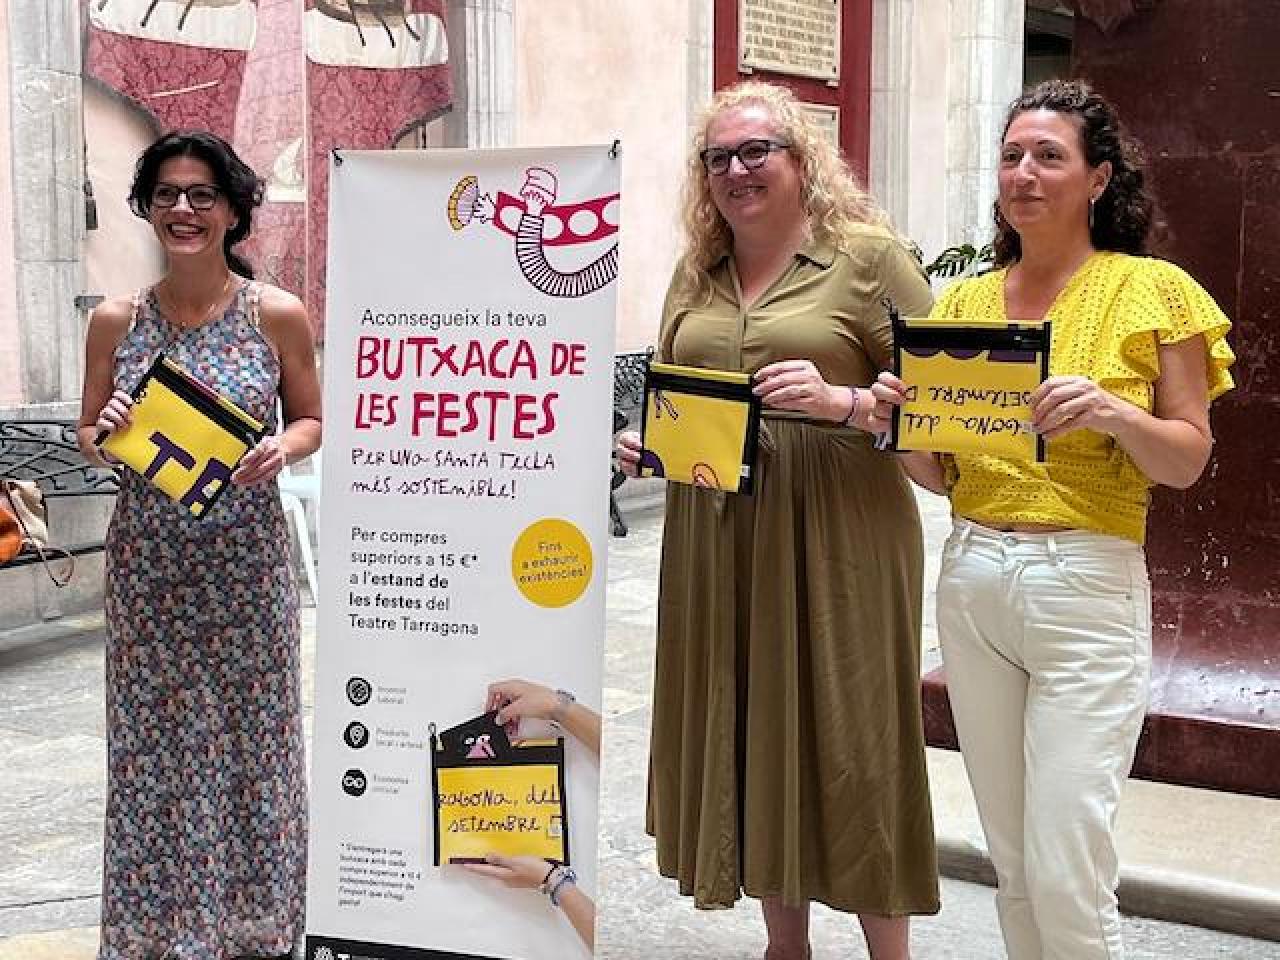 La consellera de Neteja, Sonia Orts, la consellera de Cultura i Festaes, Sandra Ramos i la responsable el projecte, Amanda Pérez amb la Butxaca de les Festes